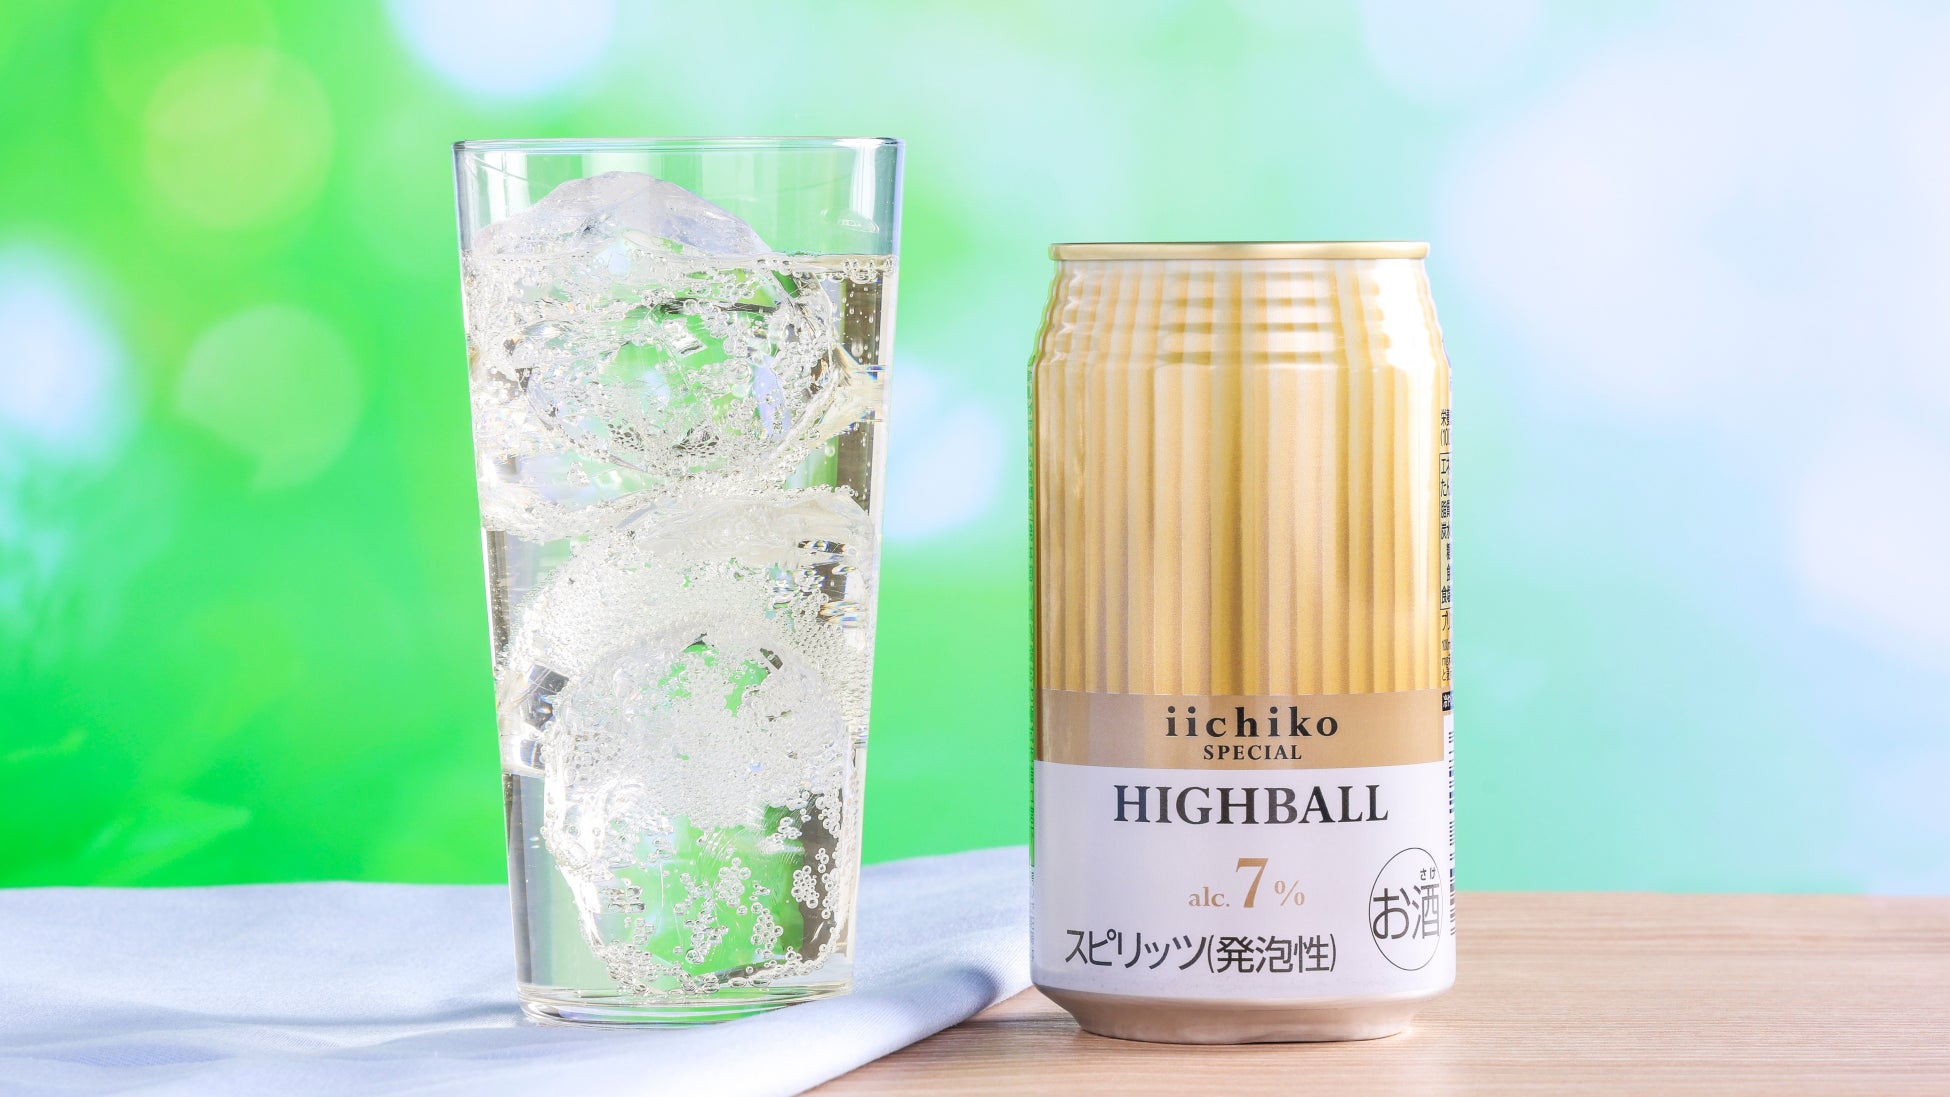 ～〈発売45周年〉本格麦焼酎「いいちこ」から特別なハイボール缶 ～　缶入り焼酎ハイボール『iichiko SPECIAL HIGHBALL』新発売！